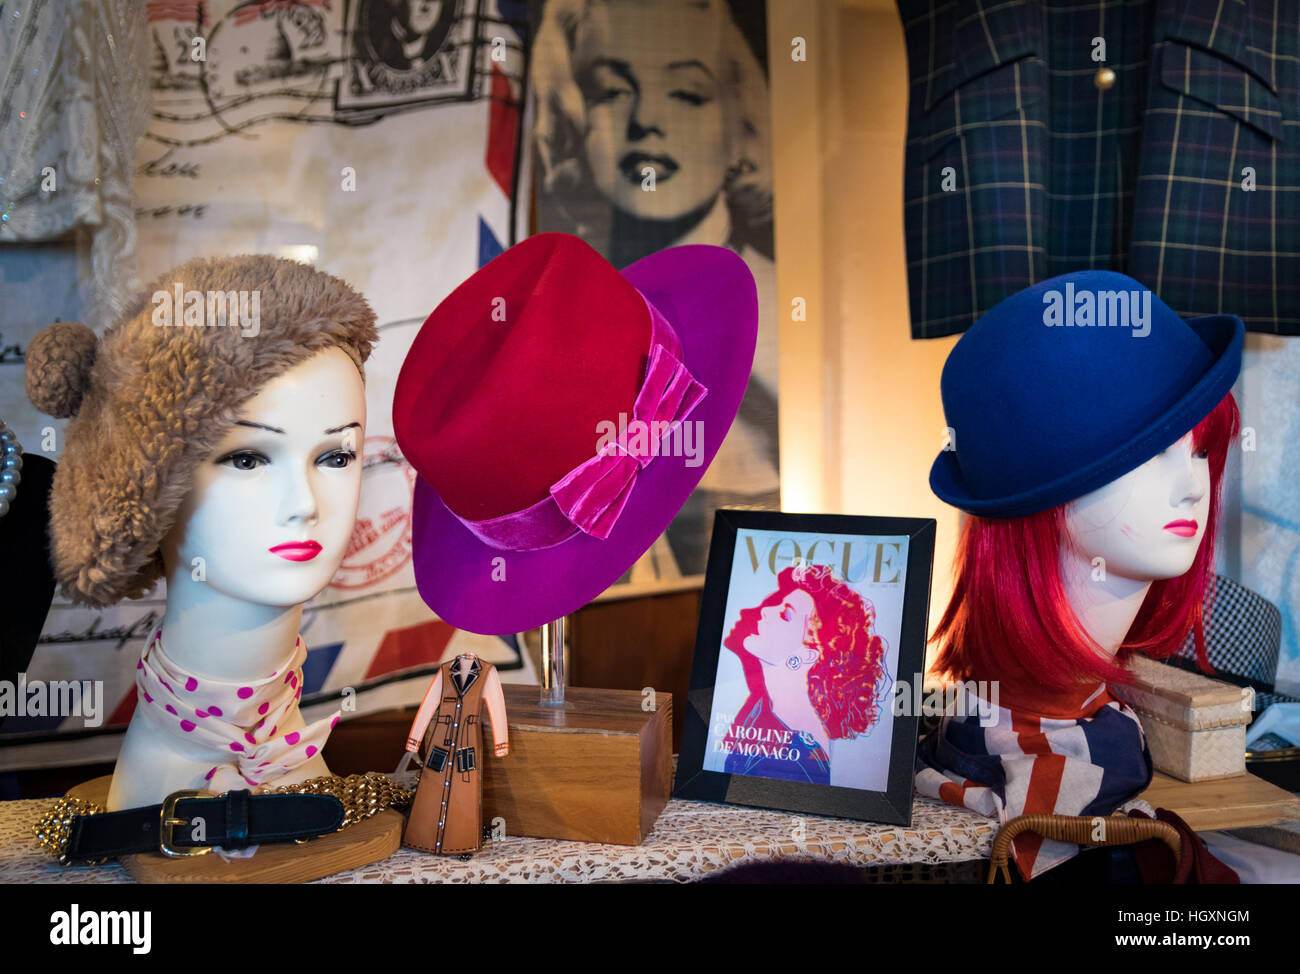 Milano, Italia - 1 Novembre 2015: donna cappelli in vecchio stile sono esposti in un mercato vintage. Foto Stock